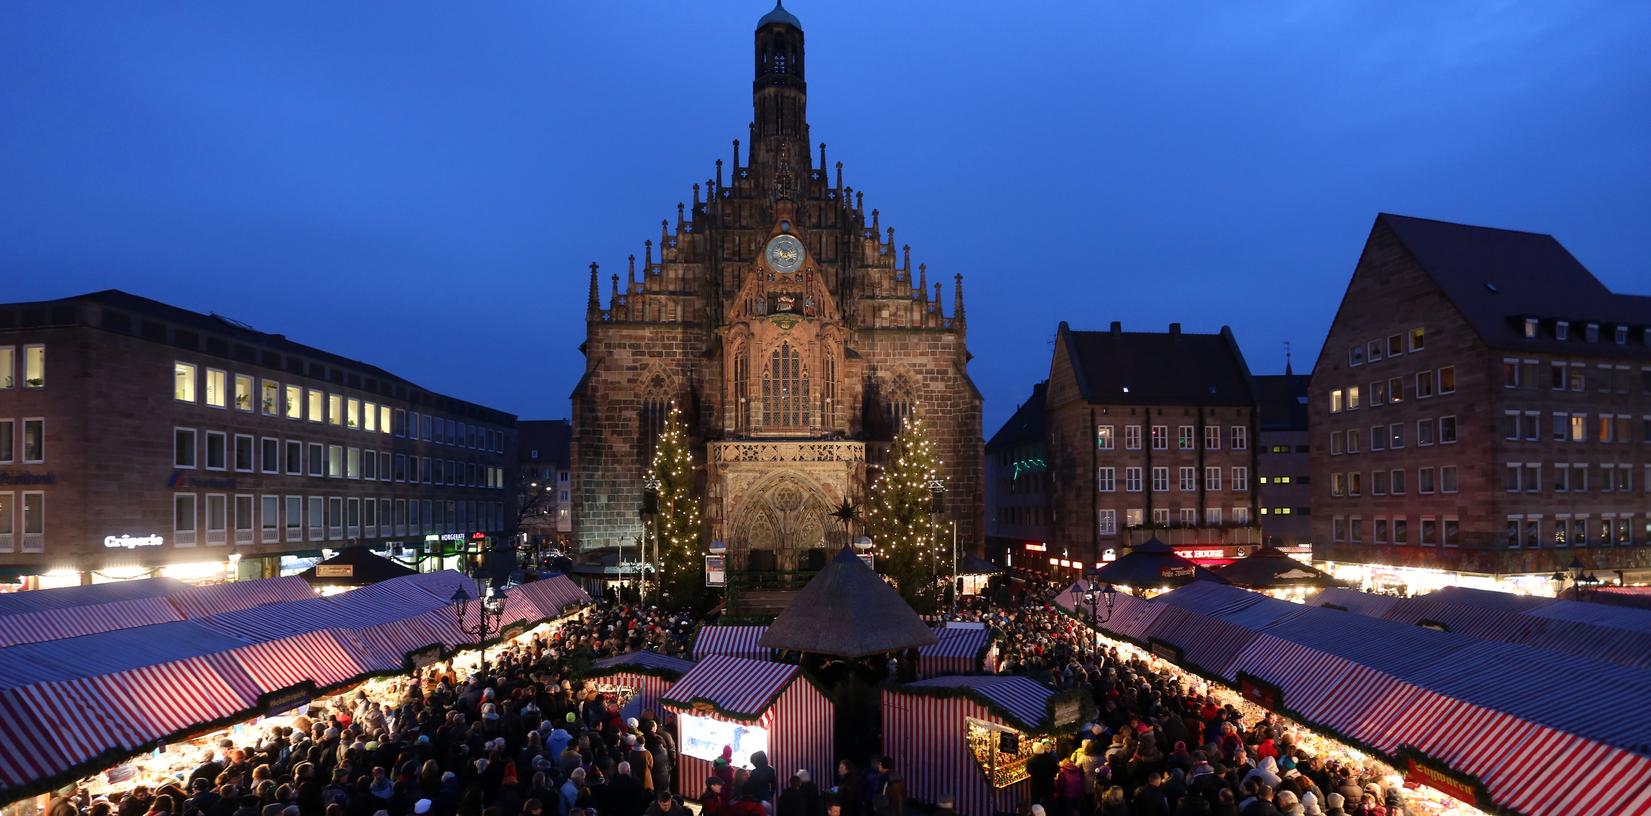 Zehn zusätzliche Access Points sollen dafür sorgen, dass die Besucher des Nürnberger Christkindlesmarktes dieses Jahr problemlos über das offene WLAN am Hauptmarkt surfen können.